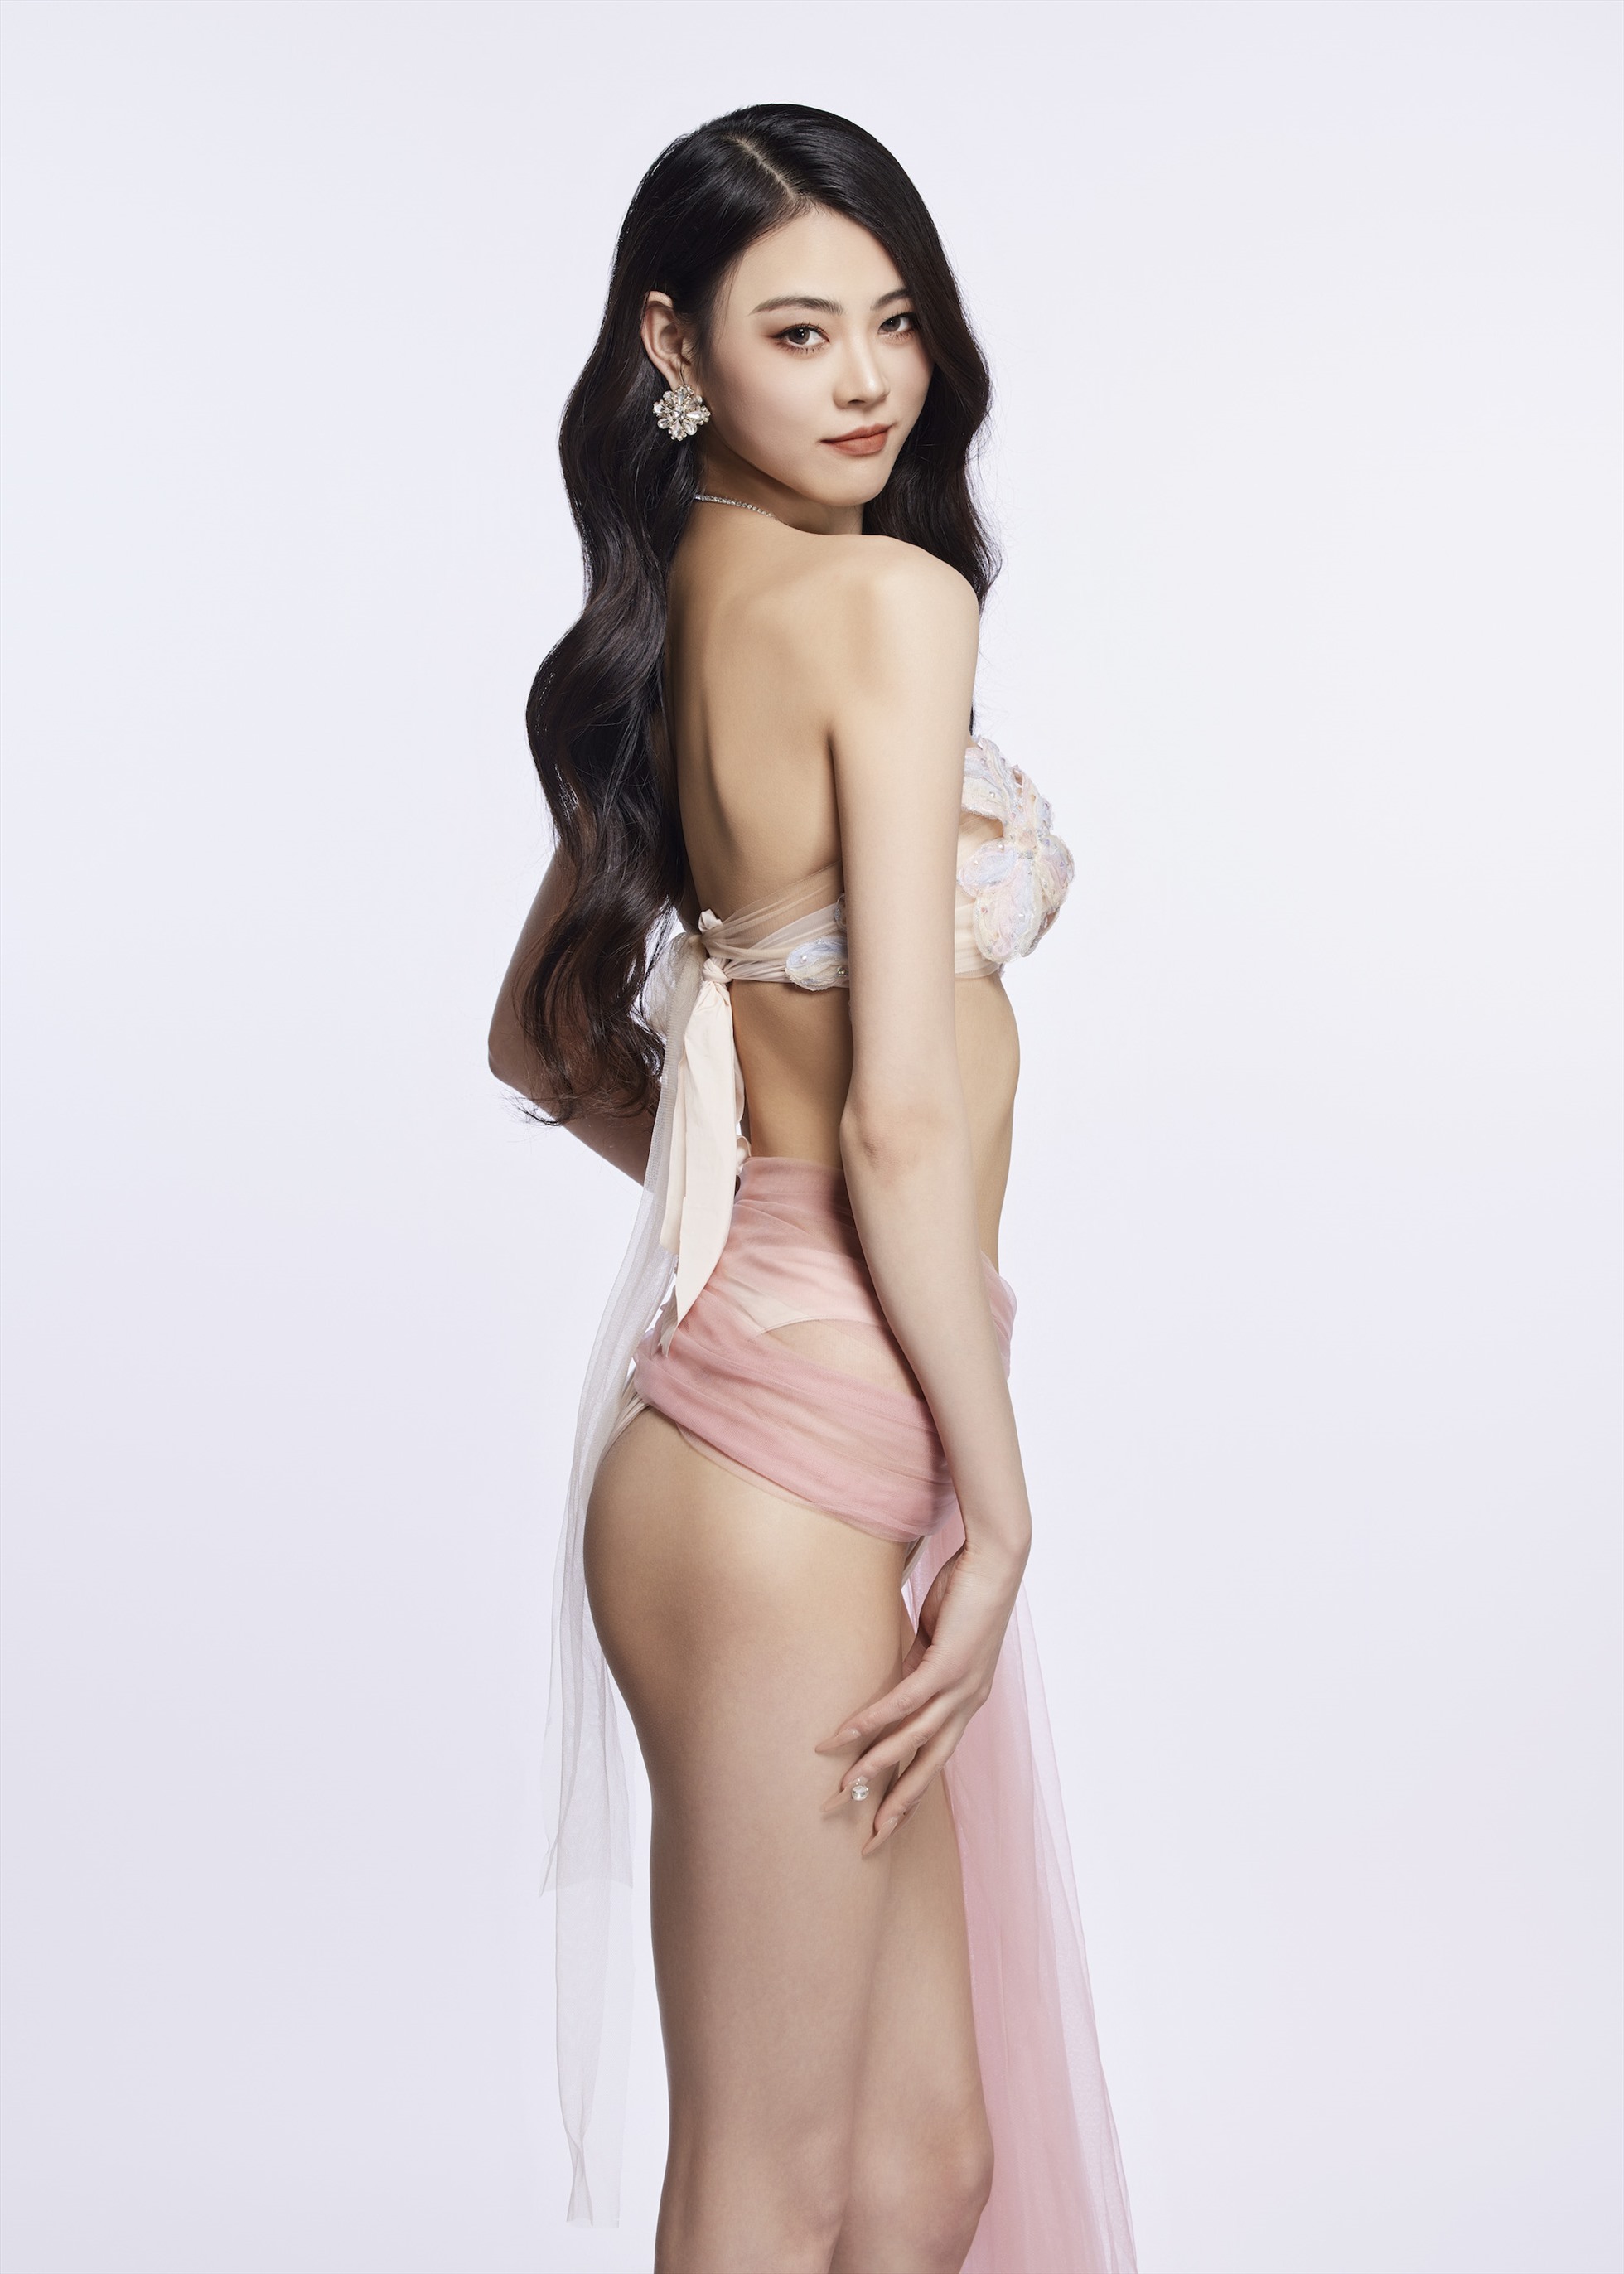 BTC  Mengli Li là đại diện đến từ Trung Quốc tranh tài ở Miss Charm 2023. Cô sở hữu chiều cao 1,76m, số đo ba vòng 78-60-80. Cô hiện là người mẫu ảnh, cộng tác với nhiều nhãn hàng trong nước